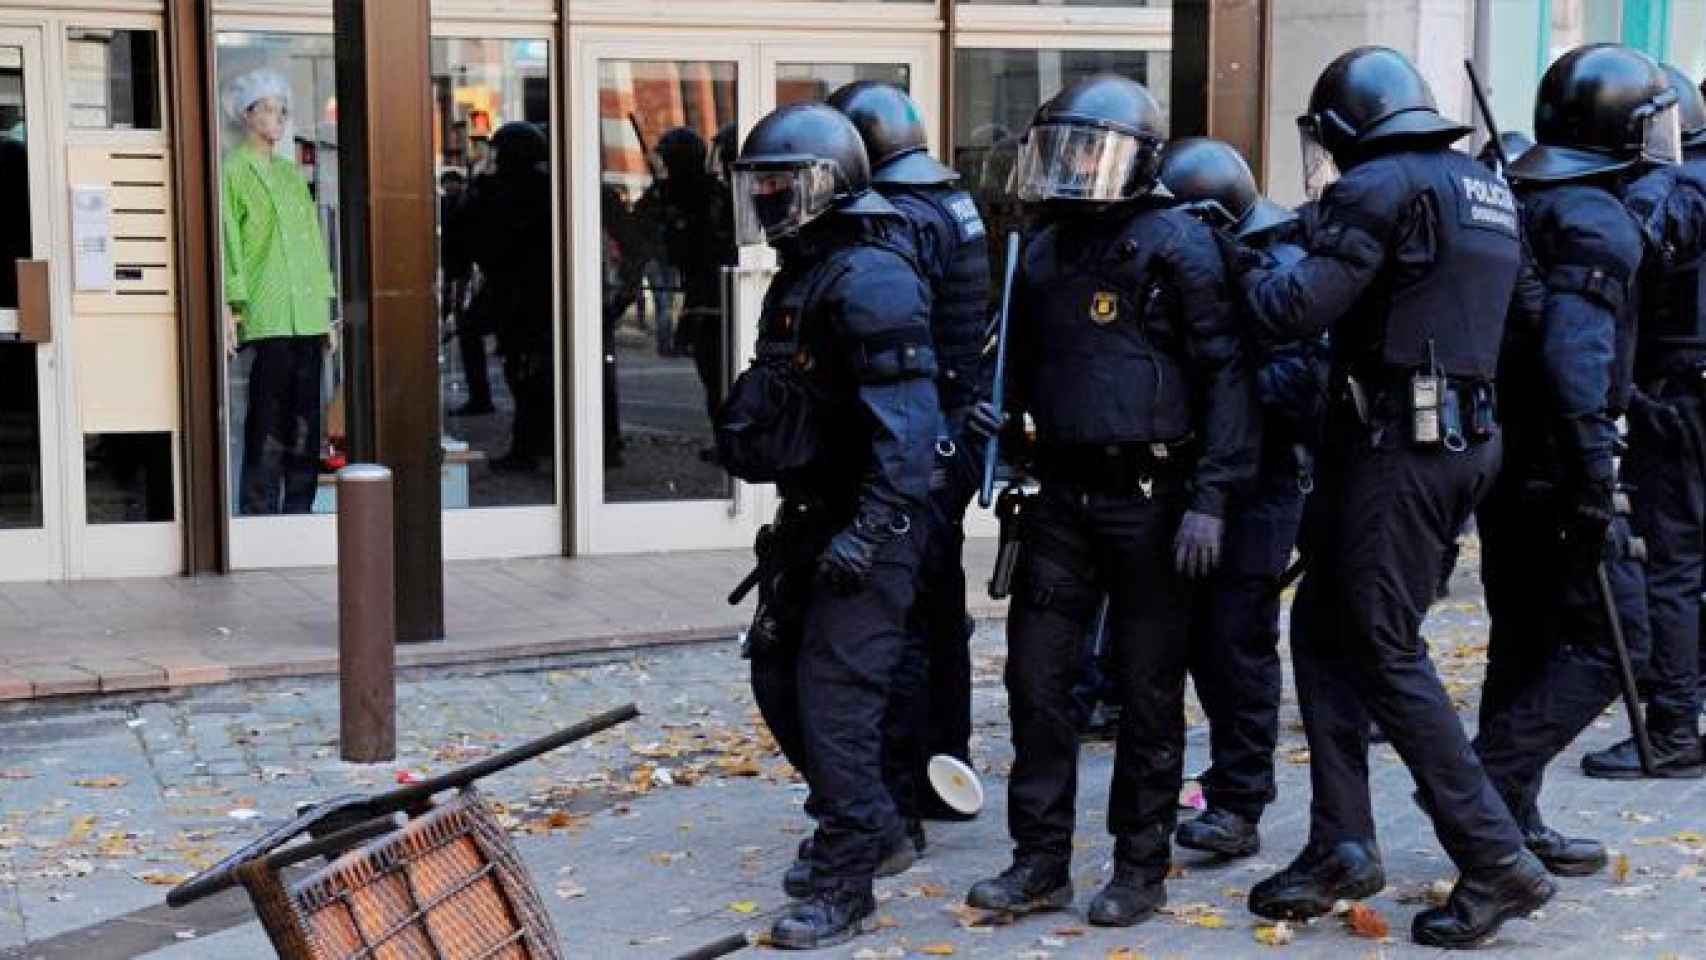 Mossos d'Esquadra, durante su intervención en los disturbios en la ciudad de Girona el Día de la Constitución / EFE